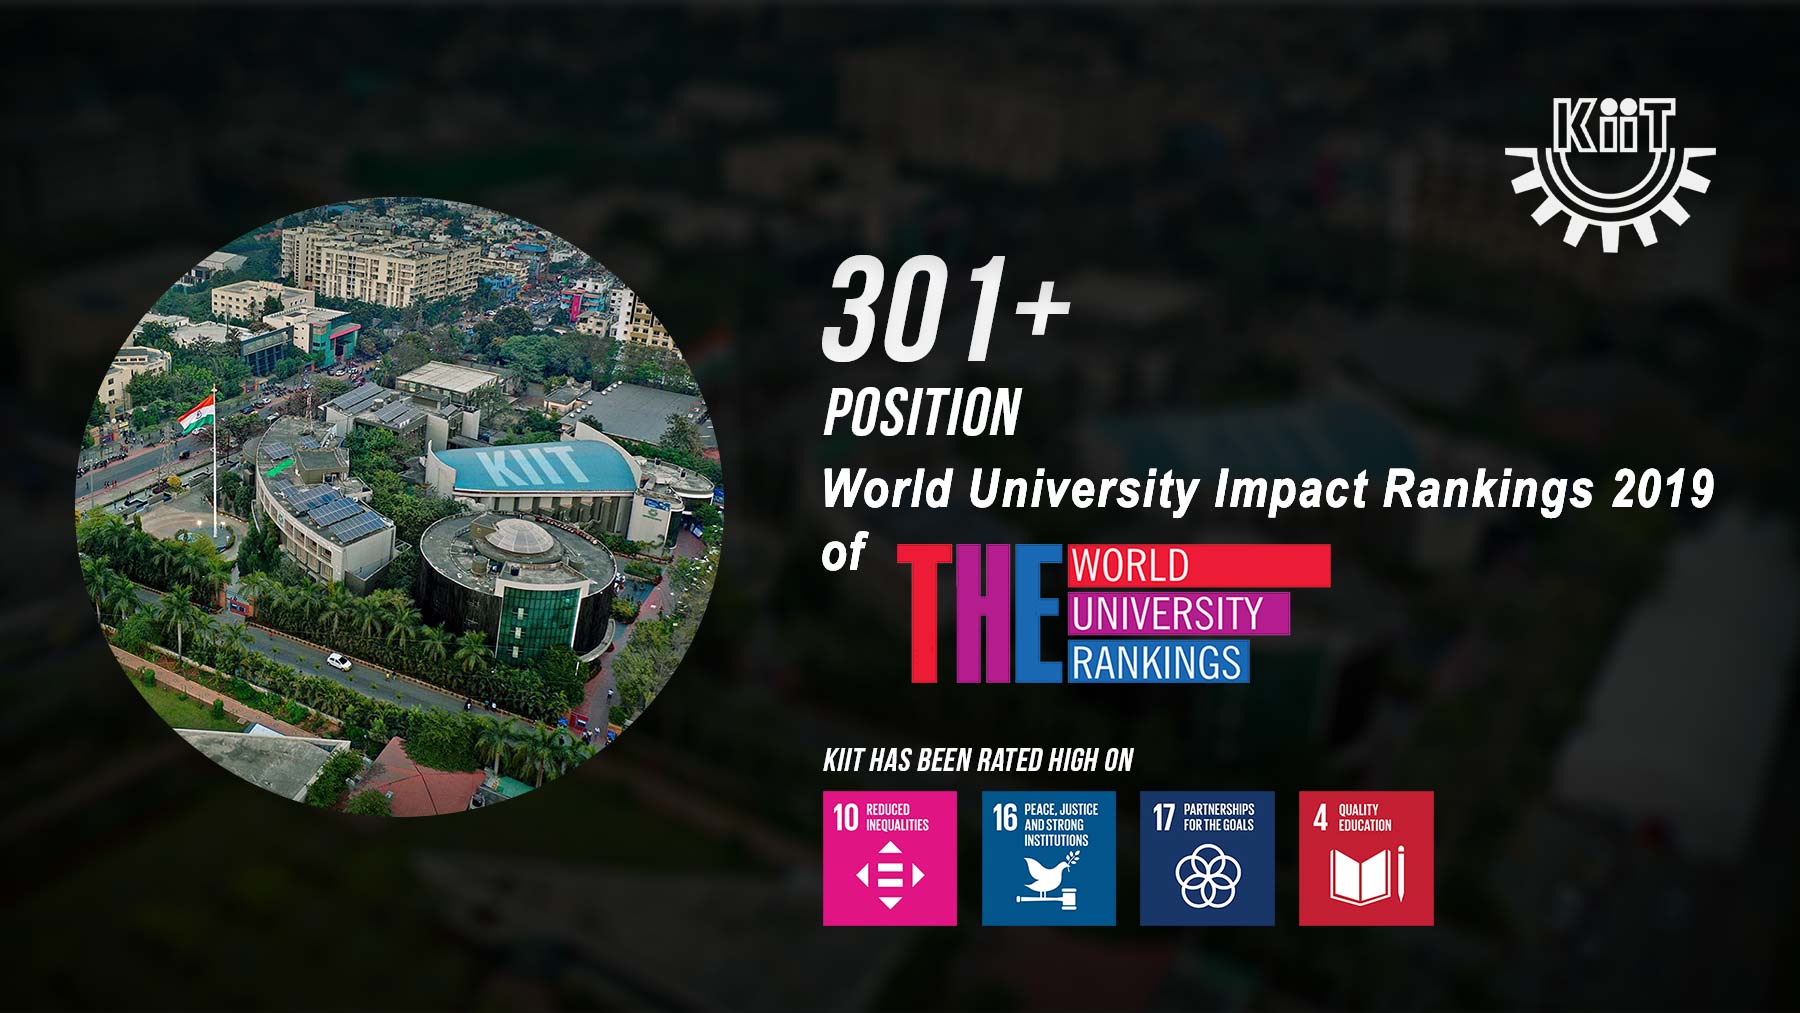 KIIT Ranking in World University Impact Rankings 2019